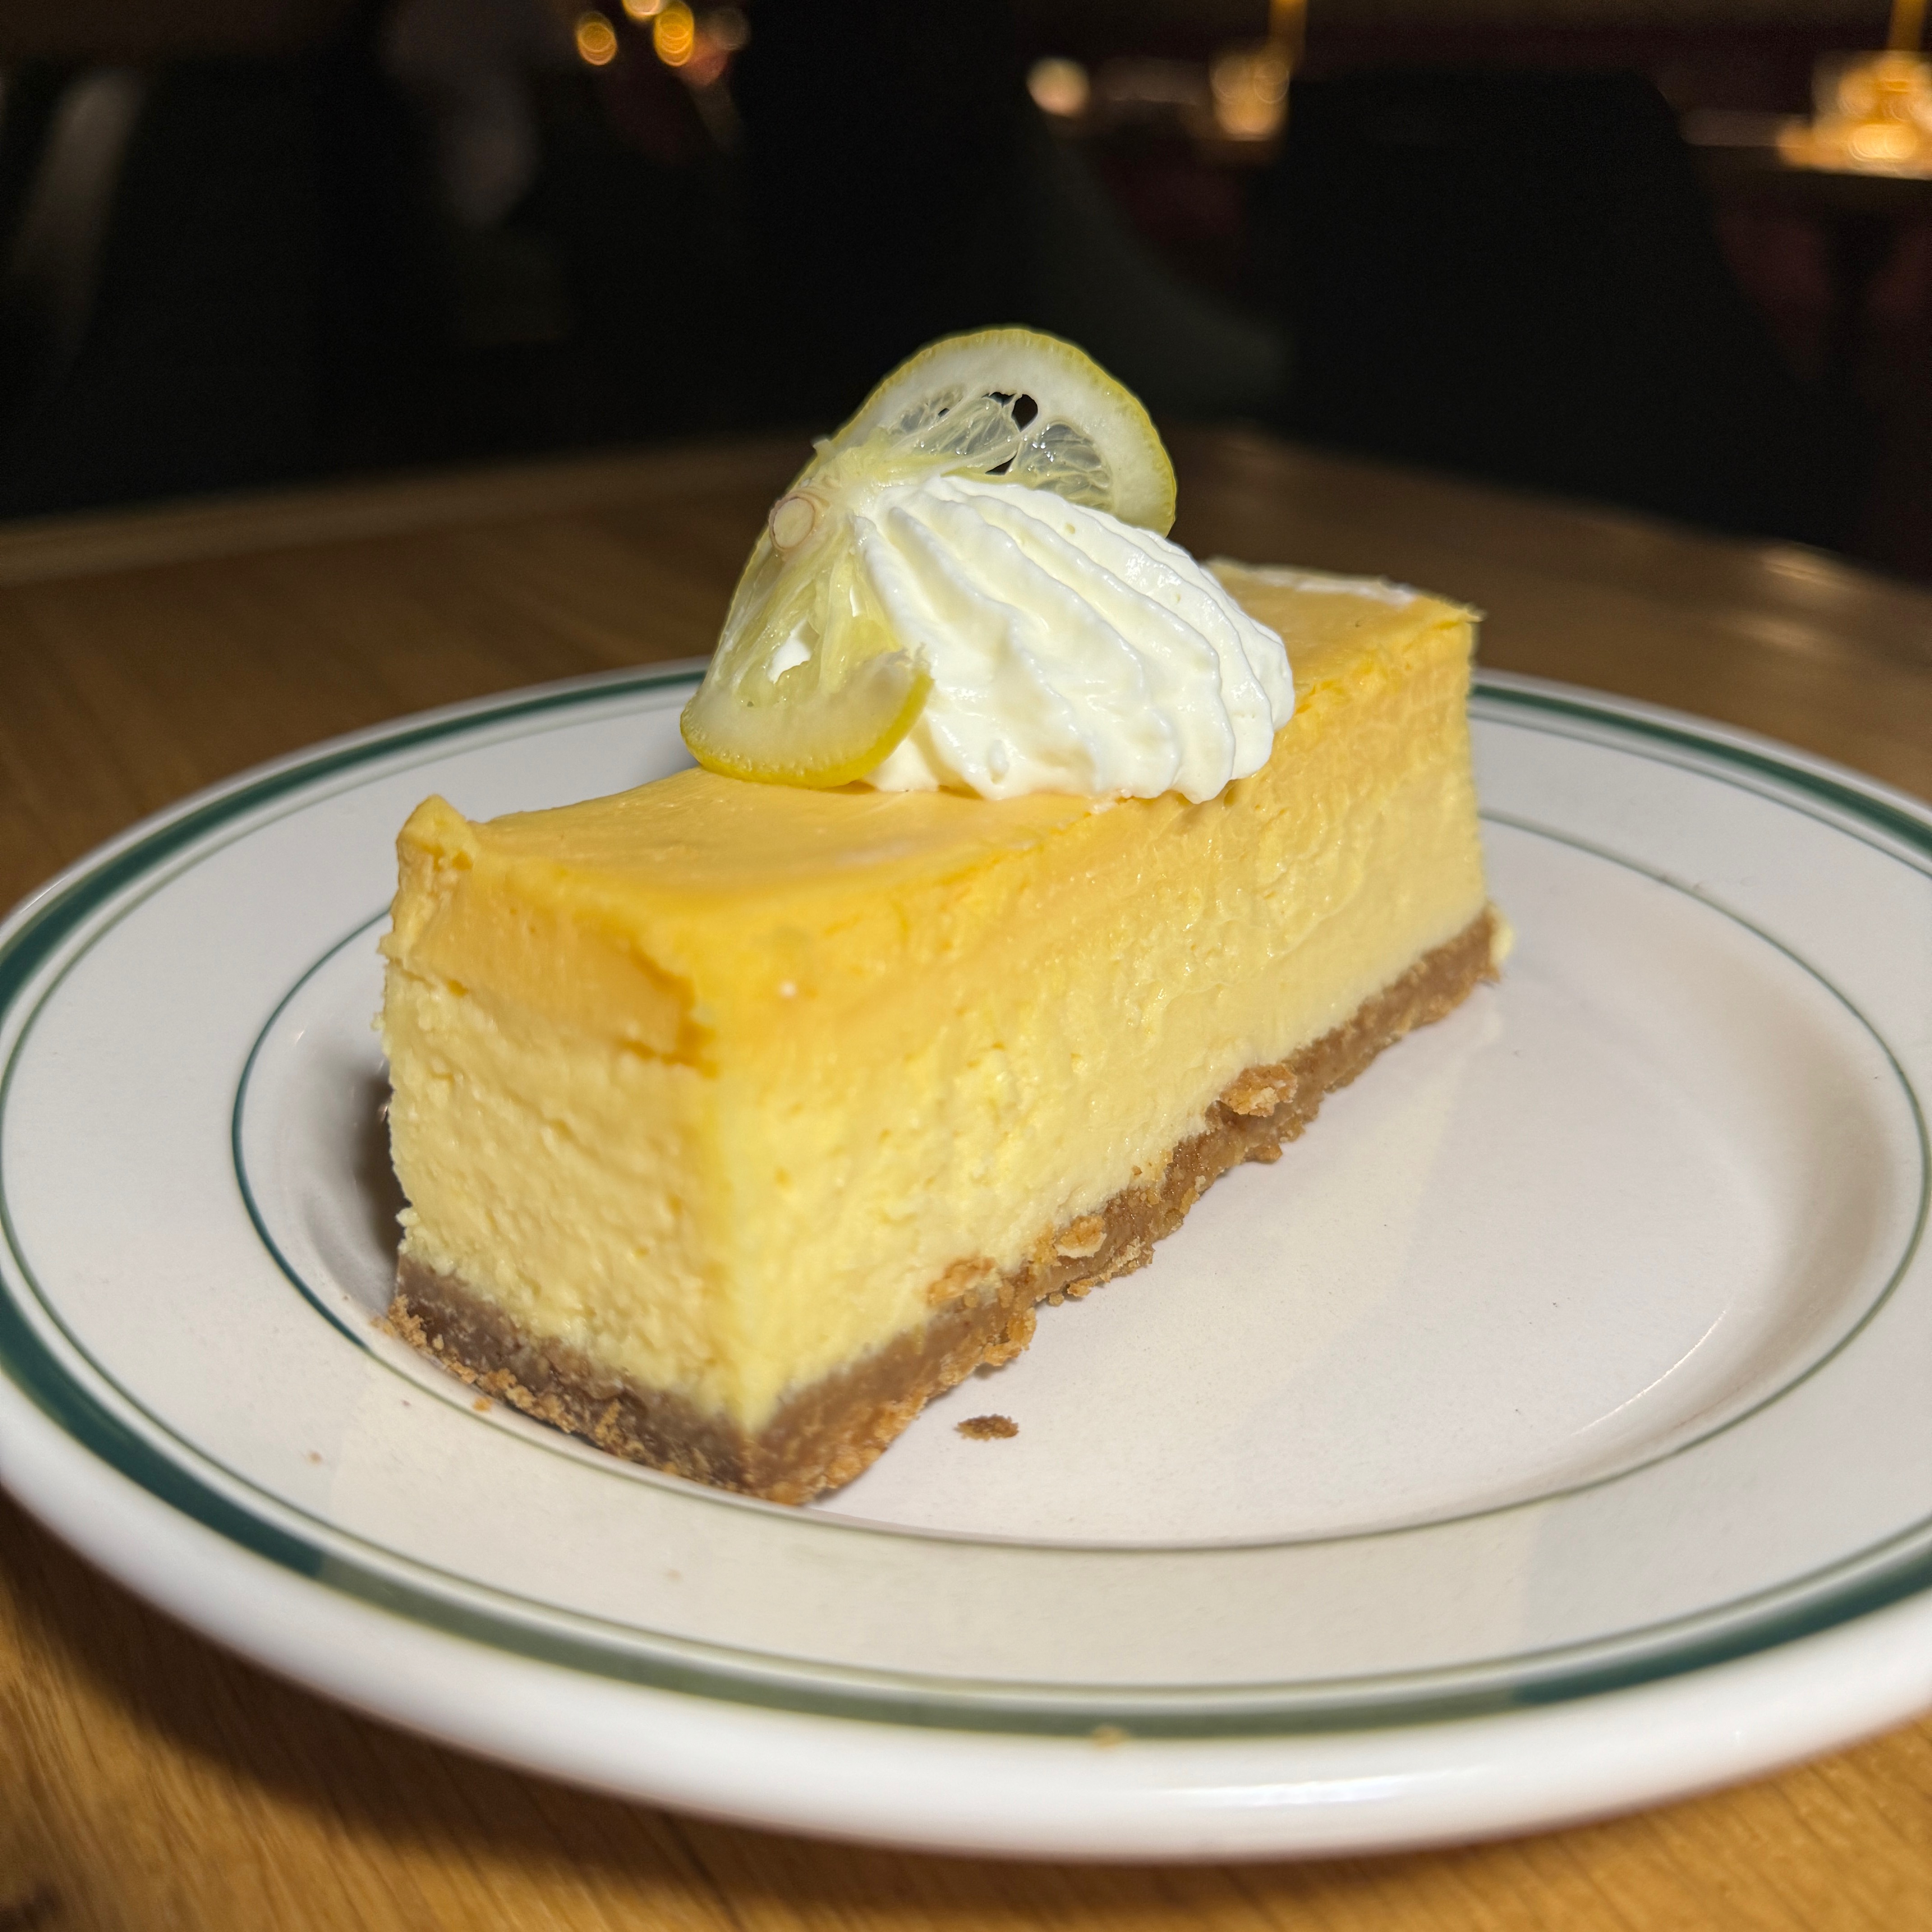 NY Cheesecake With Lemon Custard $12 at Jemma on #foodmento http://foodmento.com/place/14863